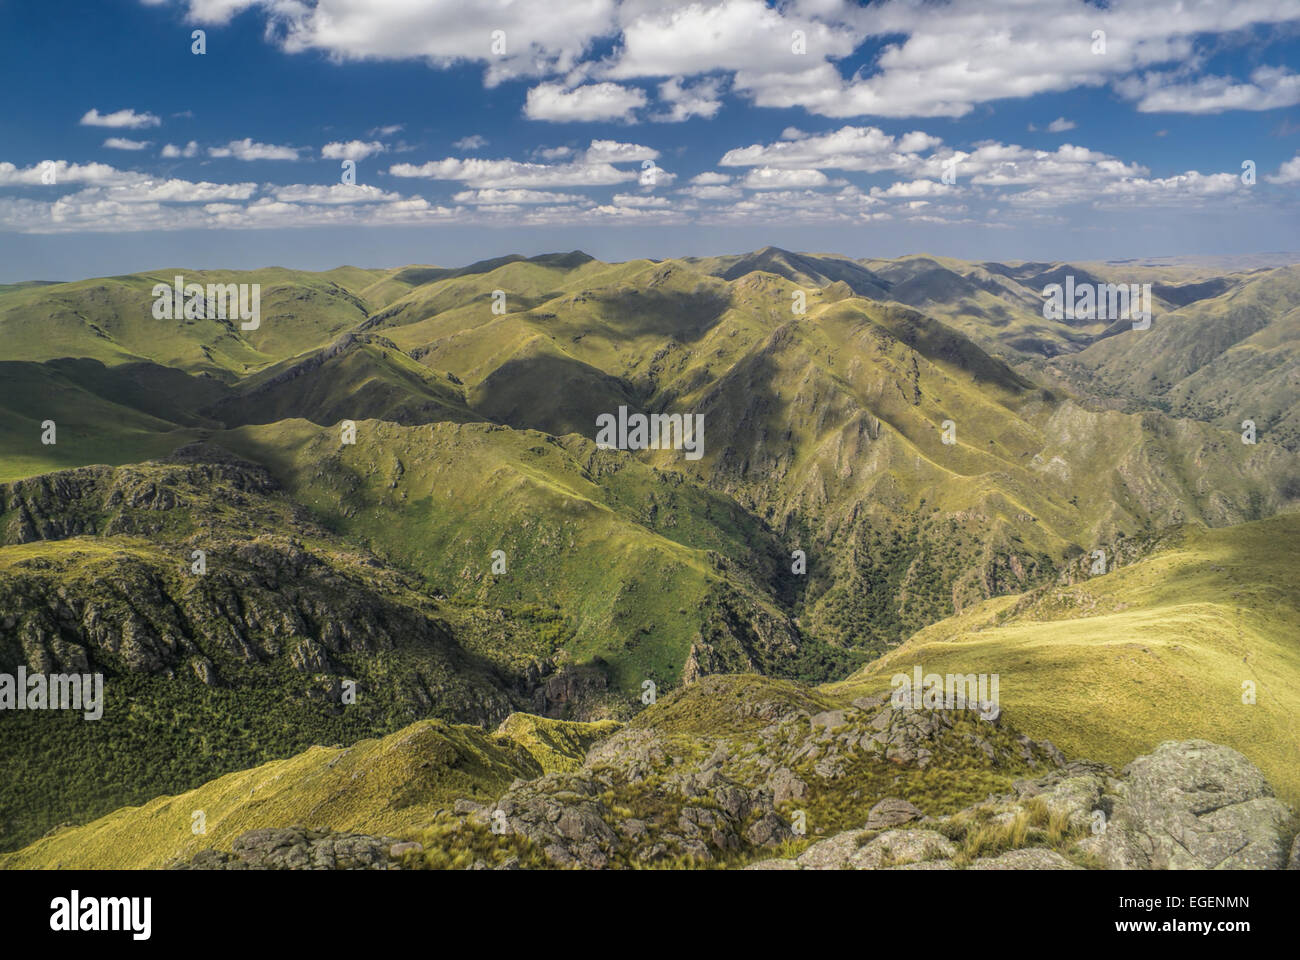 Scenic mountainous landscape in Capilla del Monte in Argentina, South America Stock Photo